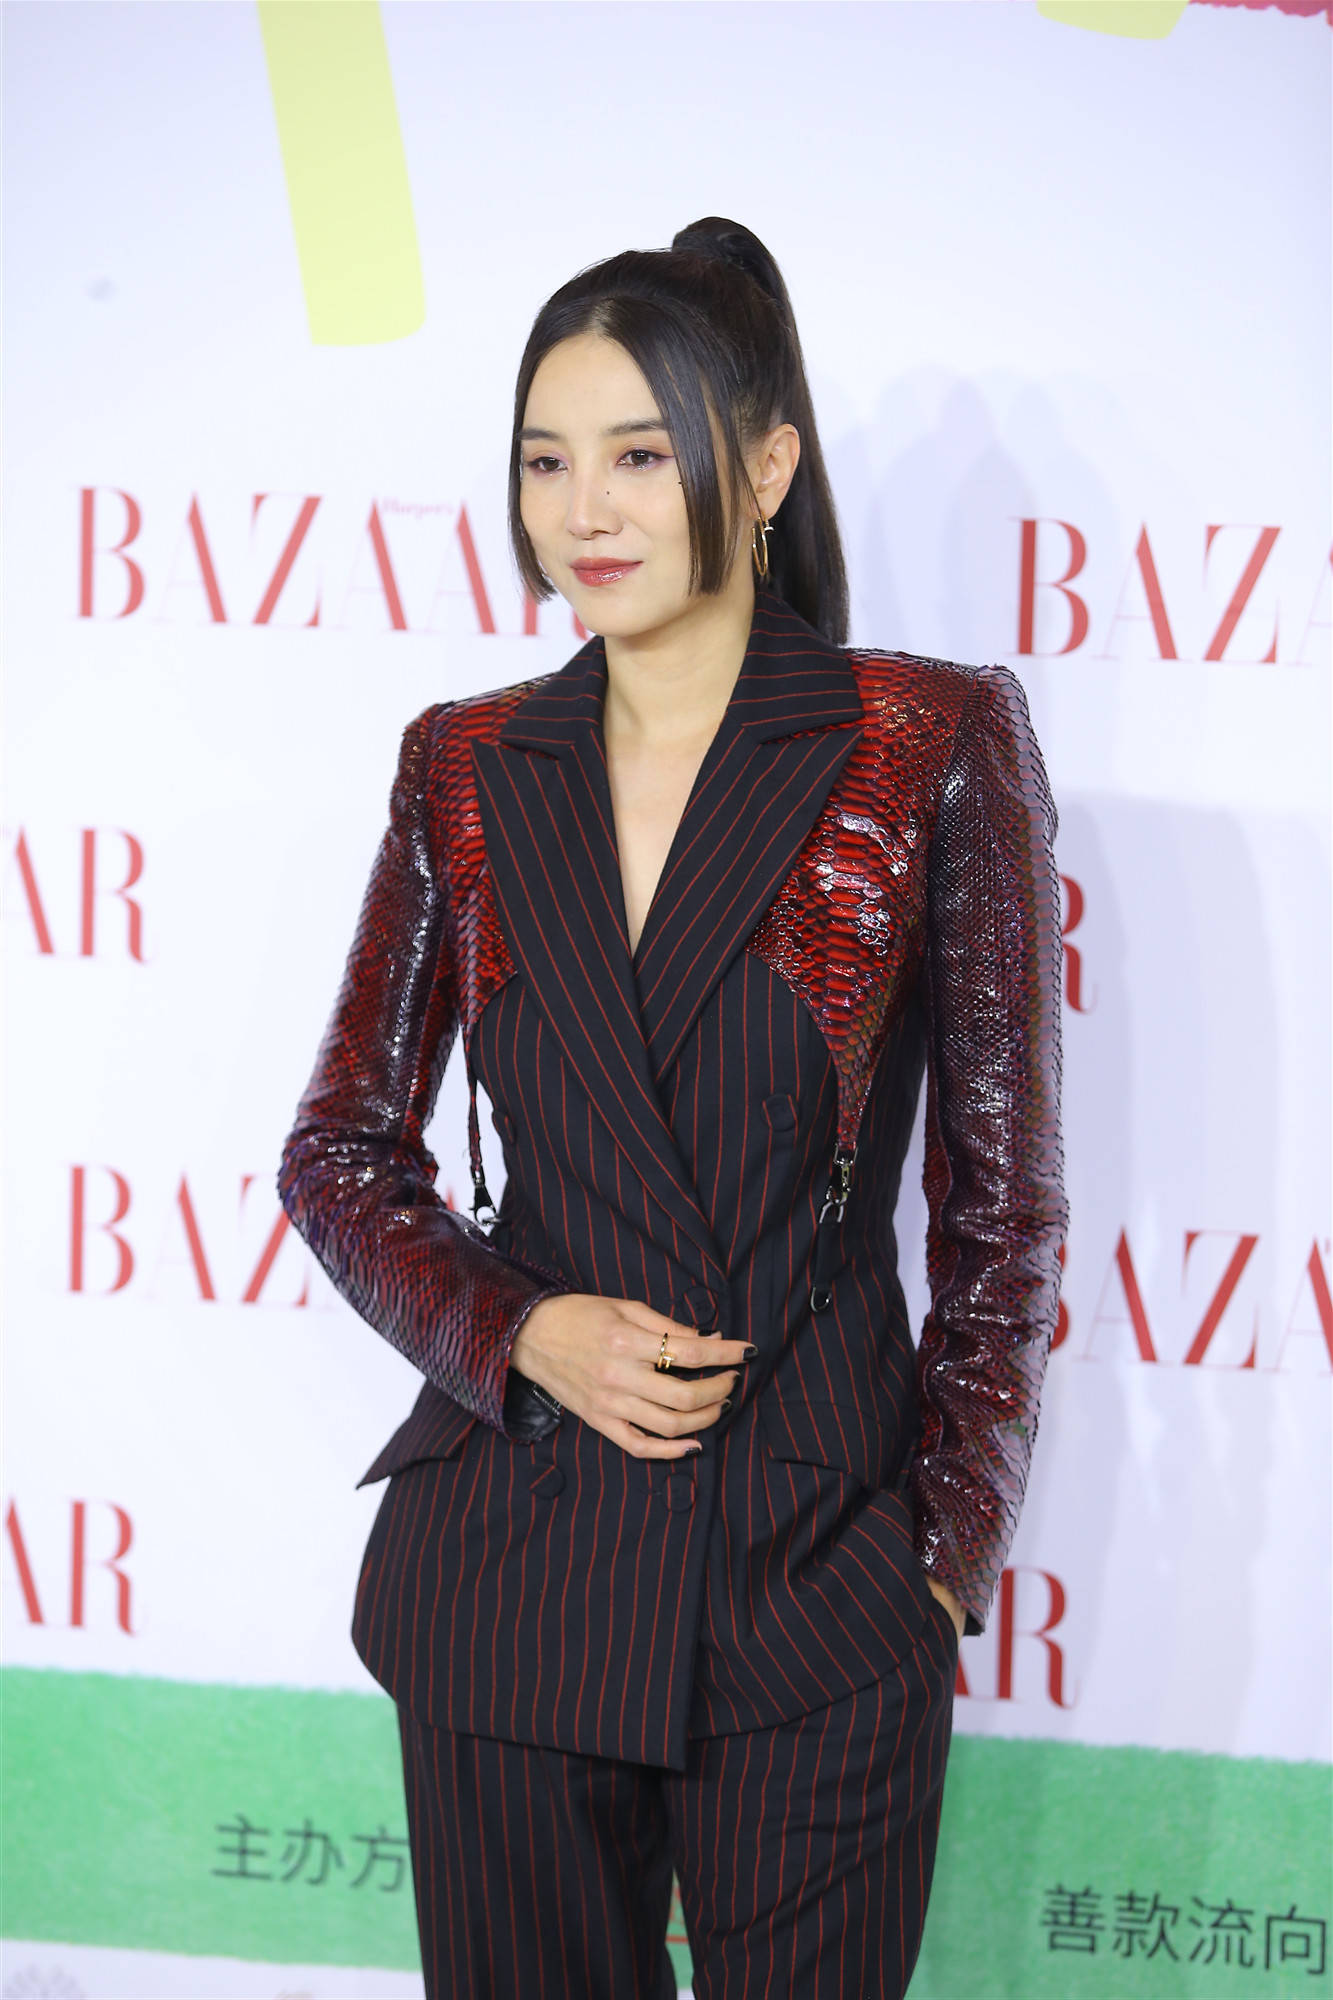 Kiểu trang phục vest đen sọc đỏ của nữ diễn viên Tiểu Tống Giai giúp tăng vẻ cá tính. Tuy nhiên, kiểu tóc đuôi ngựa kết hợp 2 mái đen thẳng khiến cô nàng trông có vẻ 'dừ' hơn ngày thường.